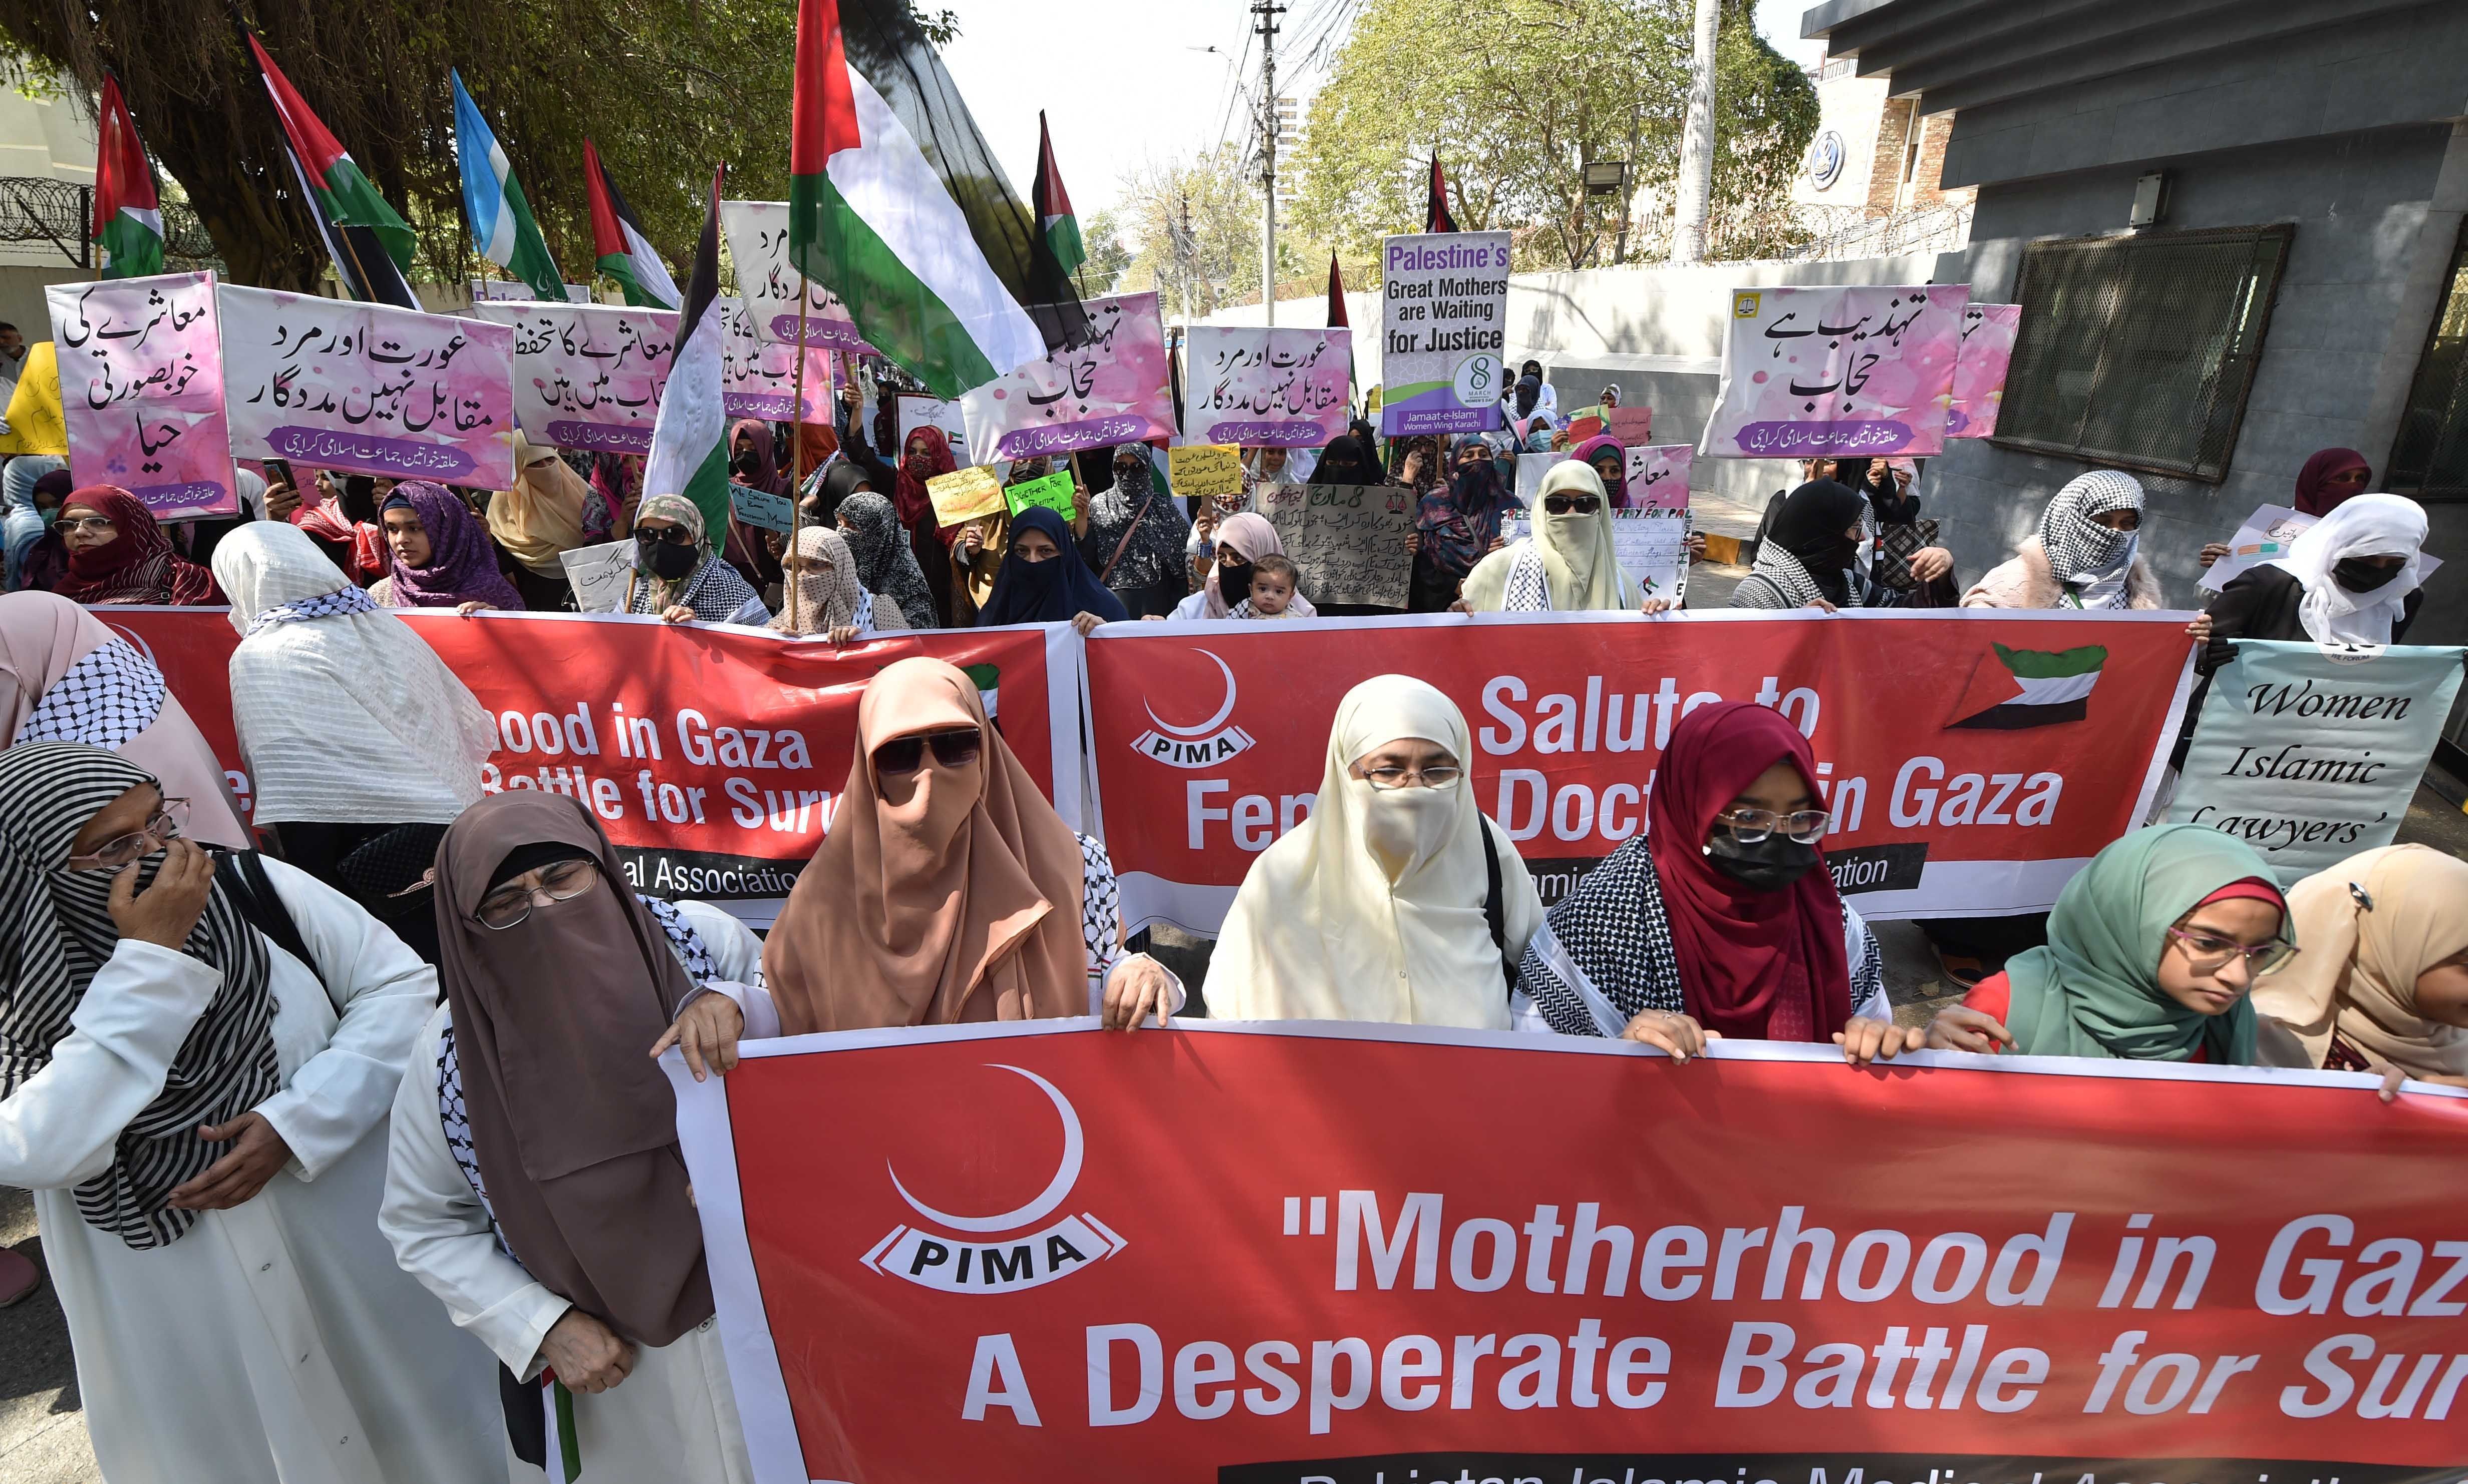 Martxoaren 8an gogoan izan dituzte Gazako emakumeak, irudian manifestazio bat Pakistanen. SHAHZAIB AKBER / EFE